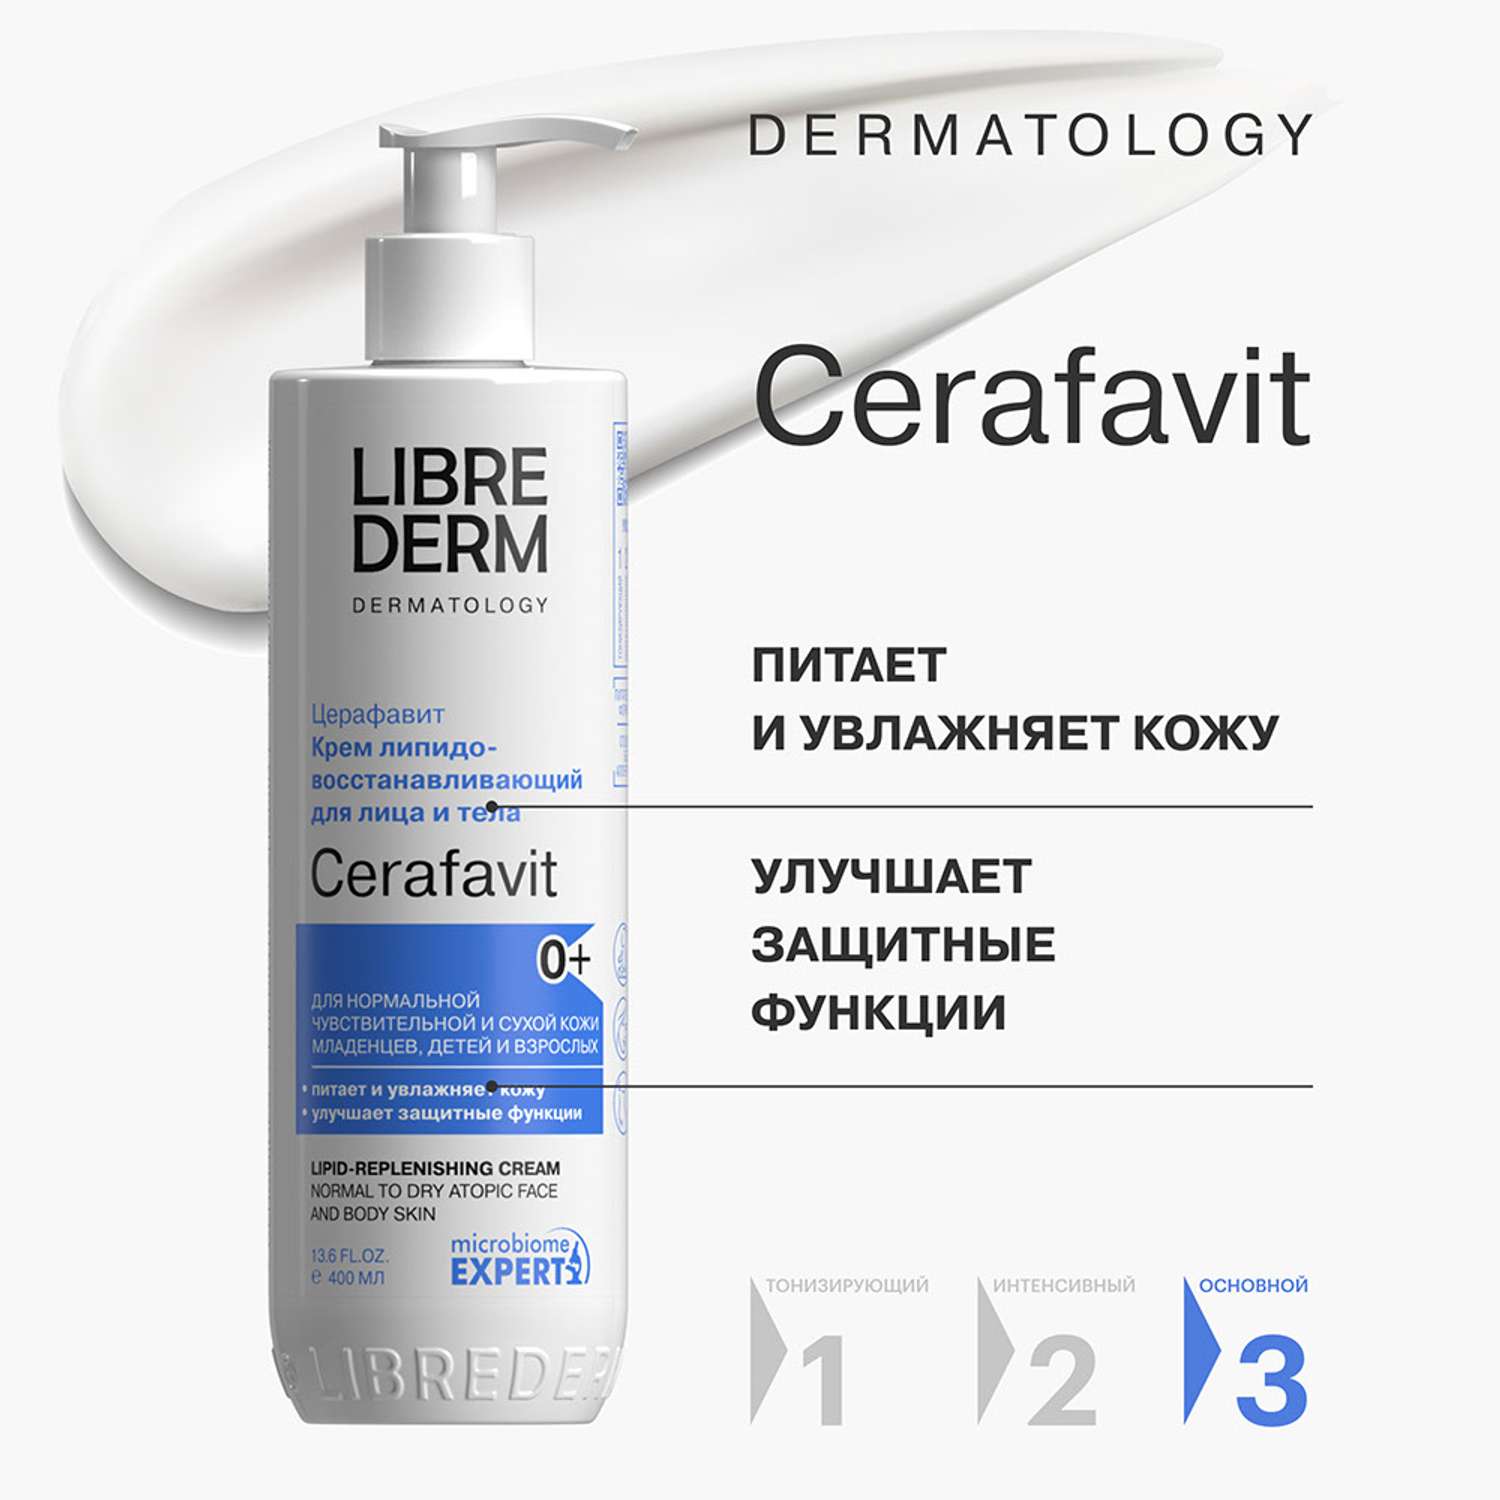 Крем 400 мл Librederm CERAFAVIT крем липидовосстанавливающий с церамидами и пребиотиком для лица и тела 0+ - фото 3